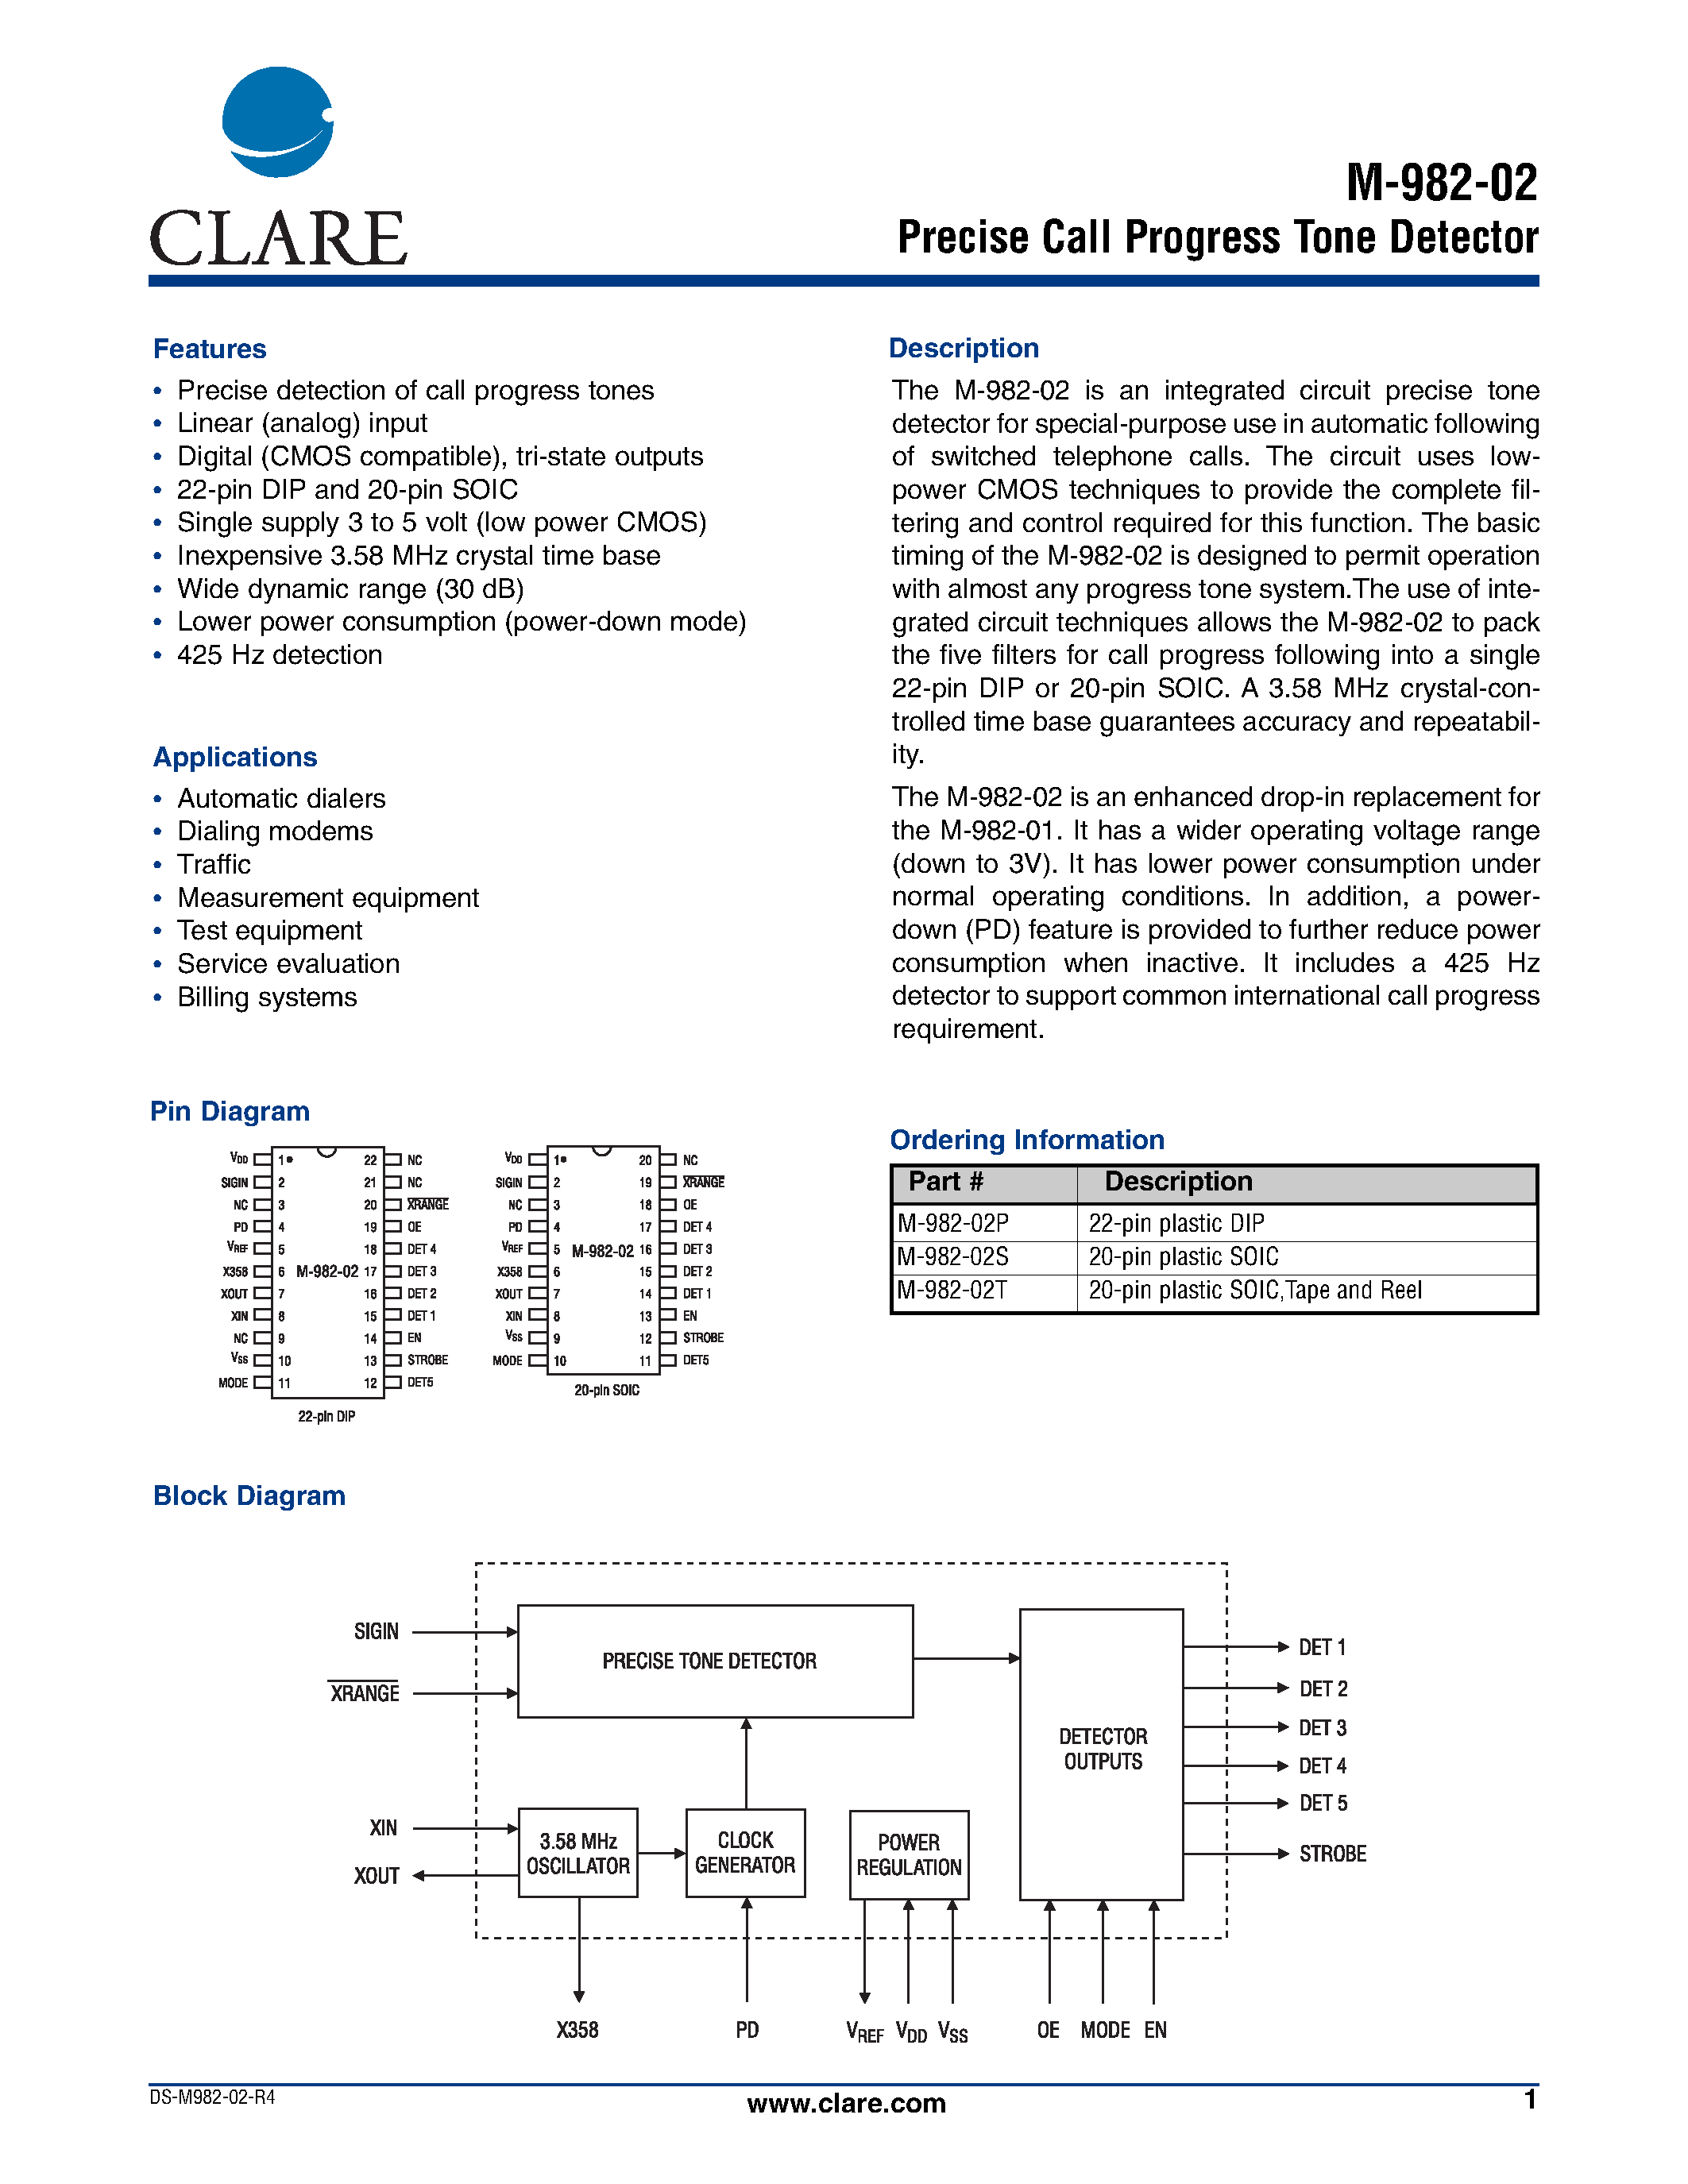 Даташит M-982-02 - Precise Call Progress Tone Detector страница 1